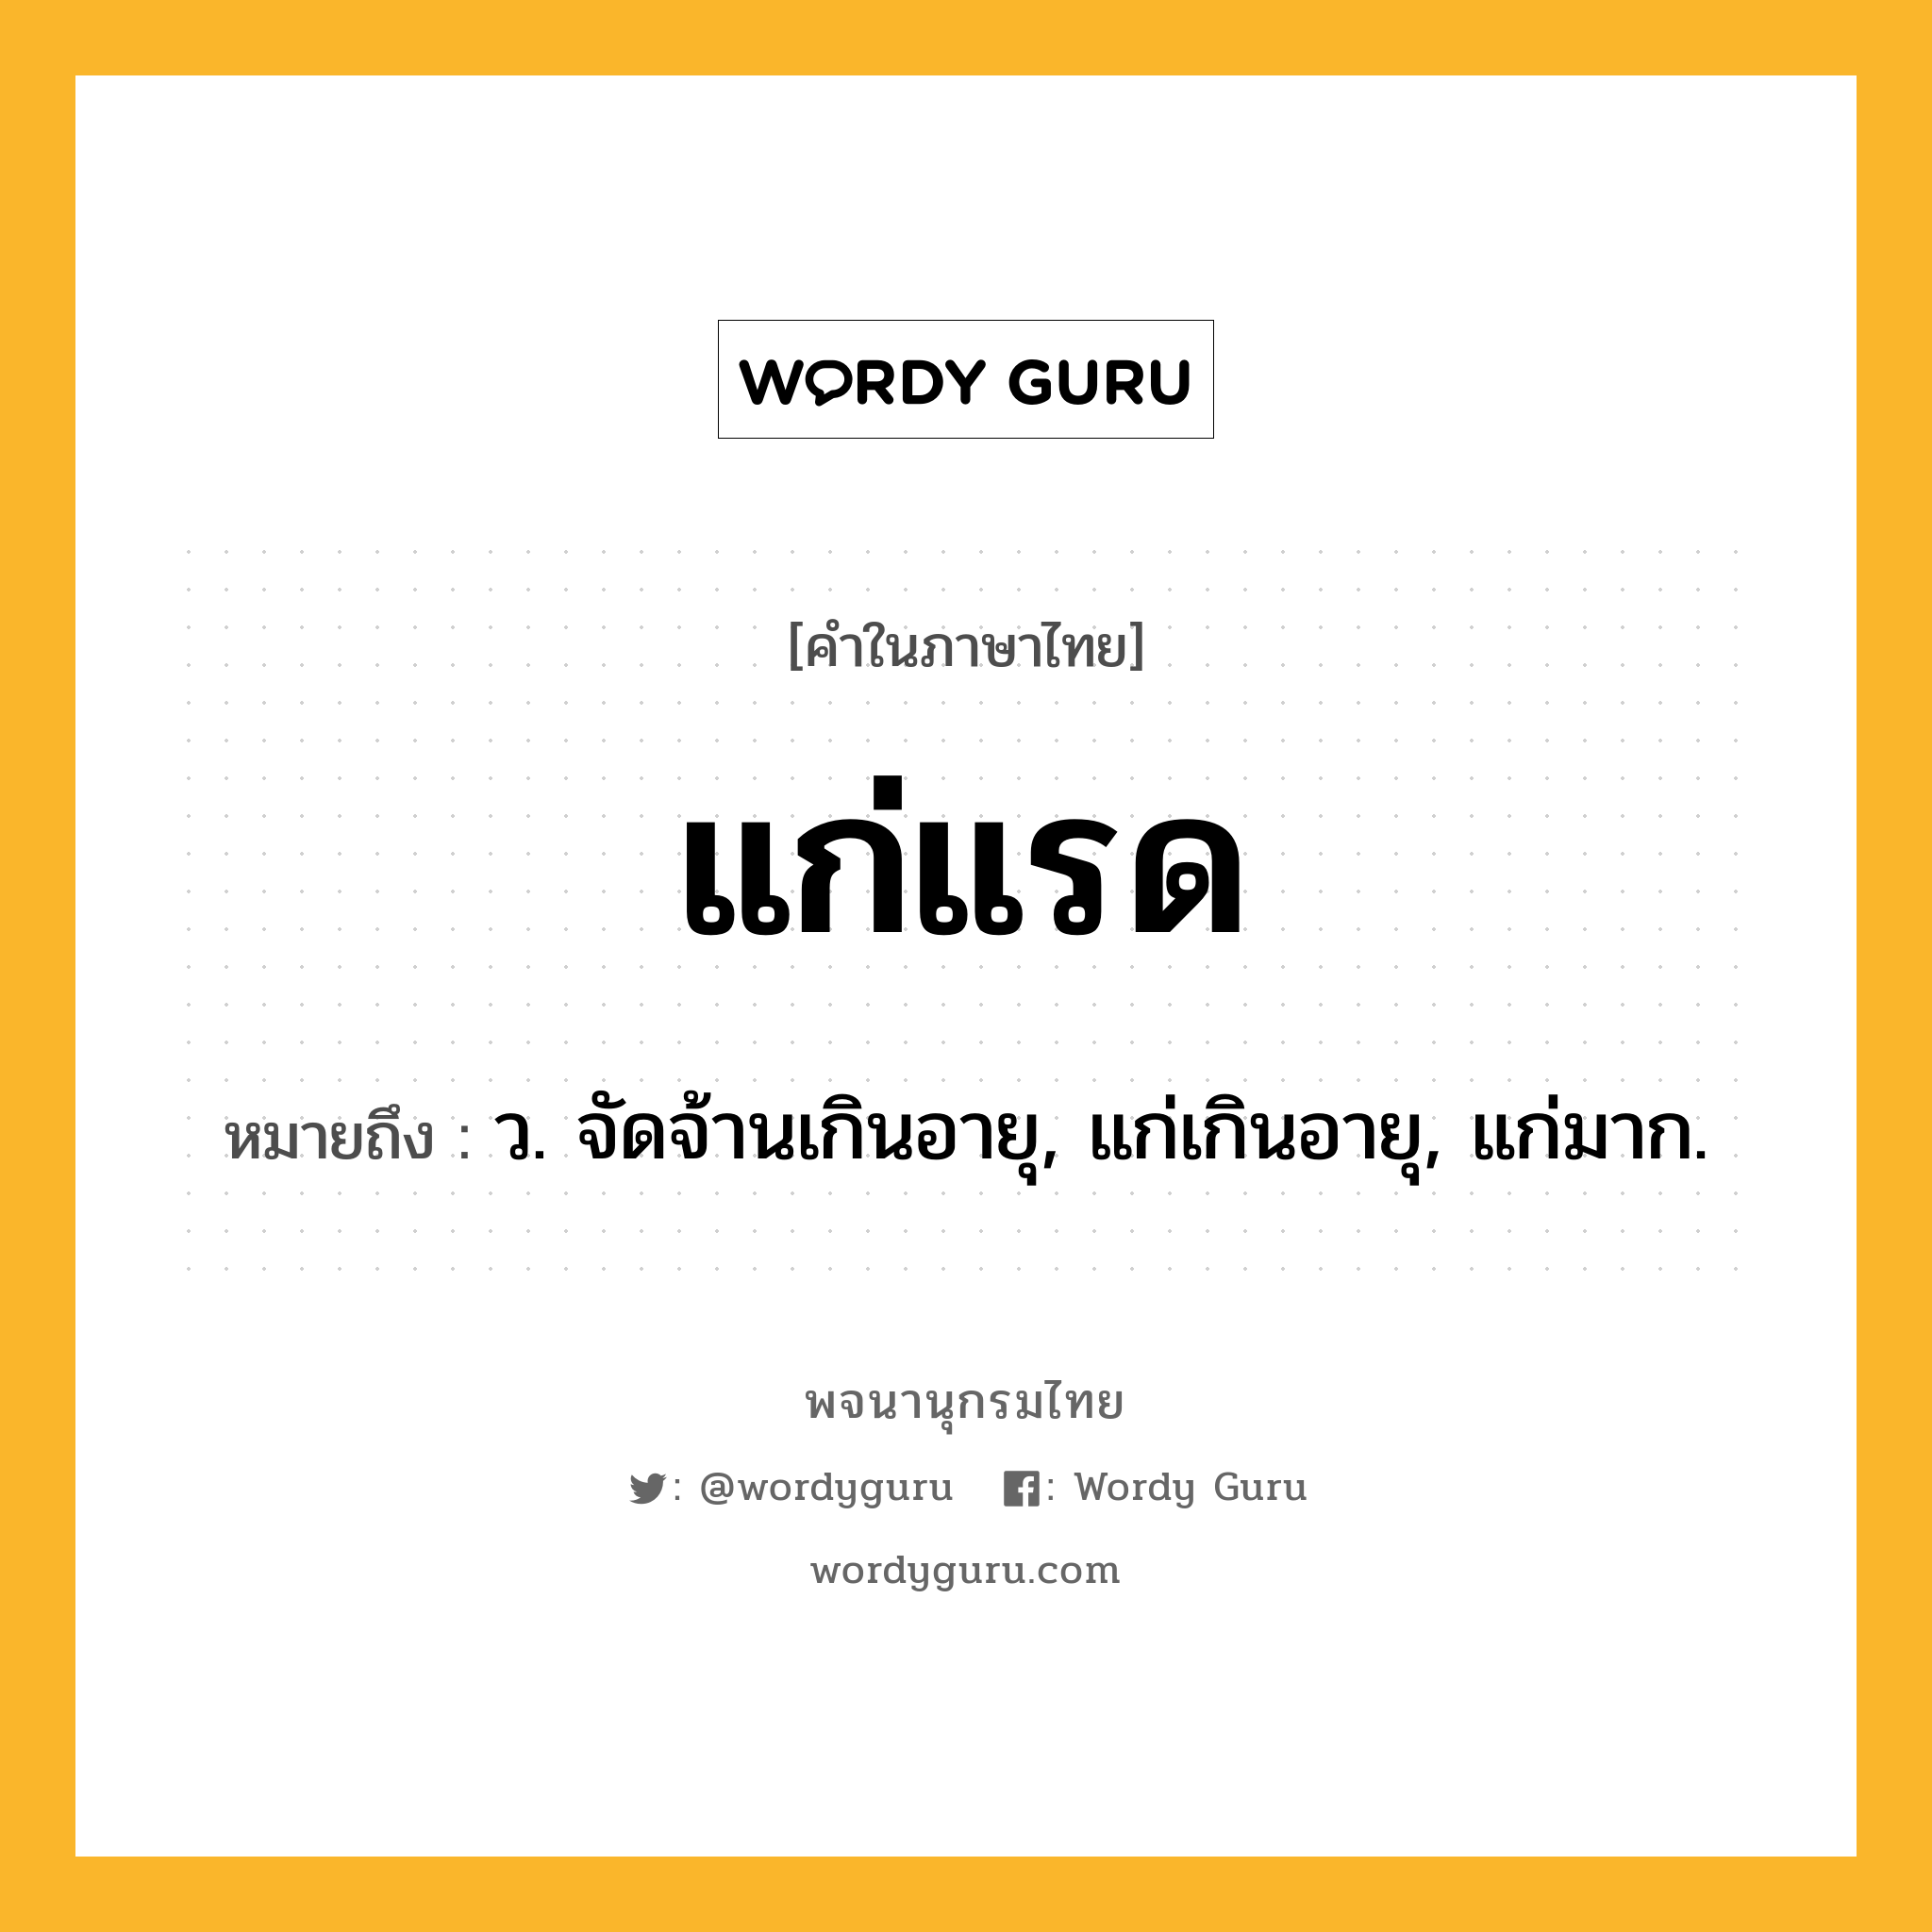 แก่แรด ความหมาย หมายถึงอะไร?, คำในภาษาไทย แก่แรด หมายถึง ว. จัดจ้านเกินอายุ, แก่เกินอายุ, แก่มาก.